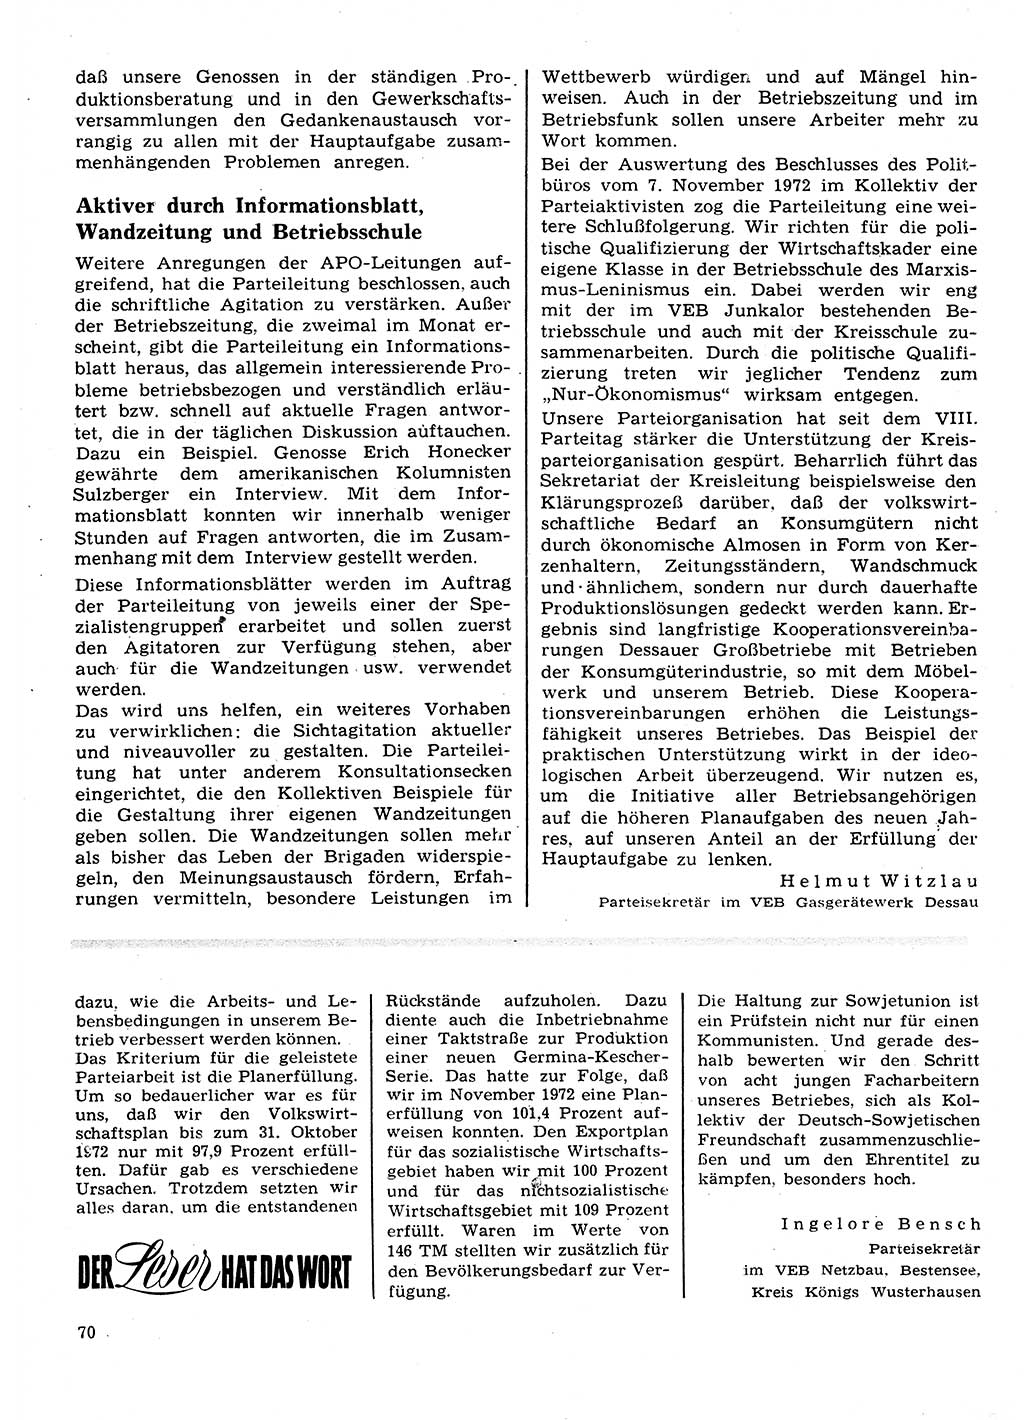 Neuer Weg (NW), Organ des Zentralkomitees (ZK) der SED (Sozialistische Einheitspartei Deutschlands) für Fragen des Parteilebens, 28. Jahrgang [Deutsche Demokratische Republik (DDR)] 1973, Seite 70 (NW ZK SED DDR 1973, S. 70)